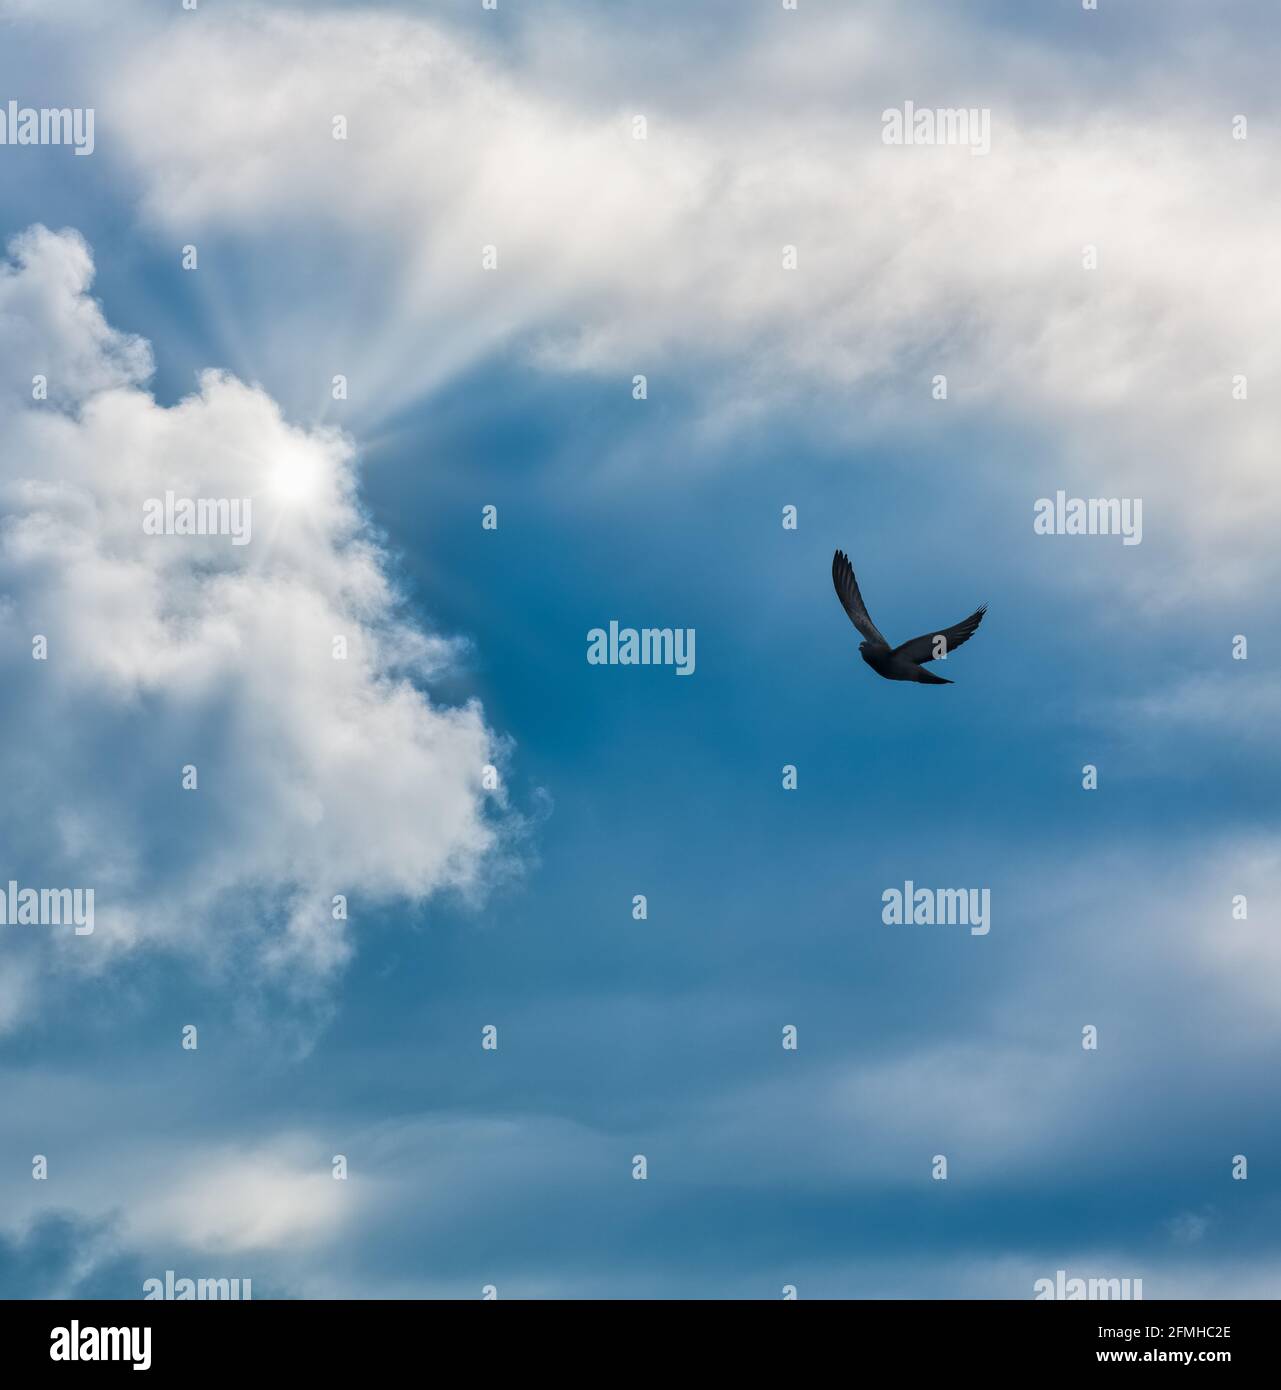 Un solo ave está volando hacia los rayos de luz En un formato de imagen vertical Foto de stock